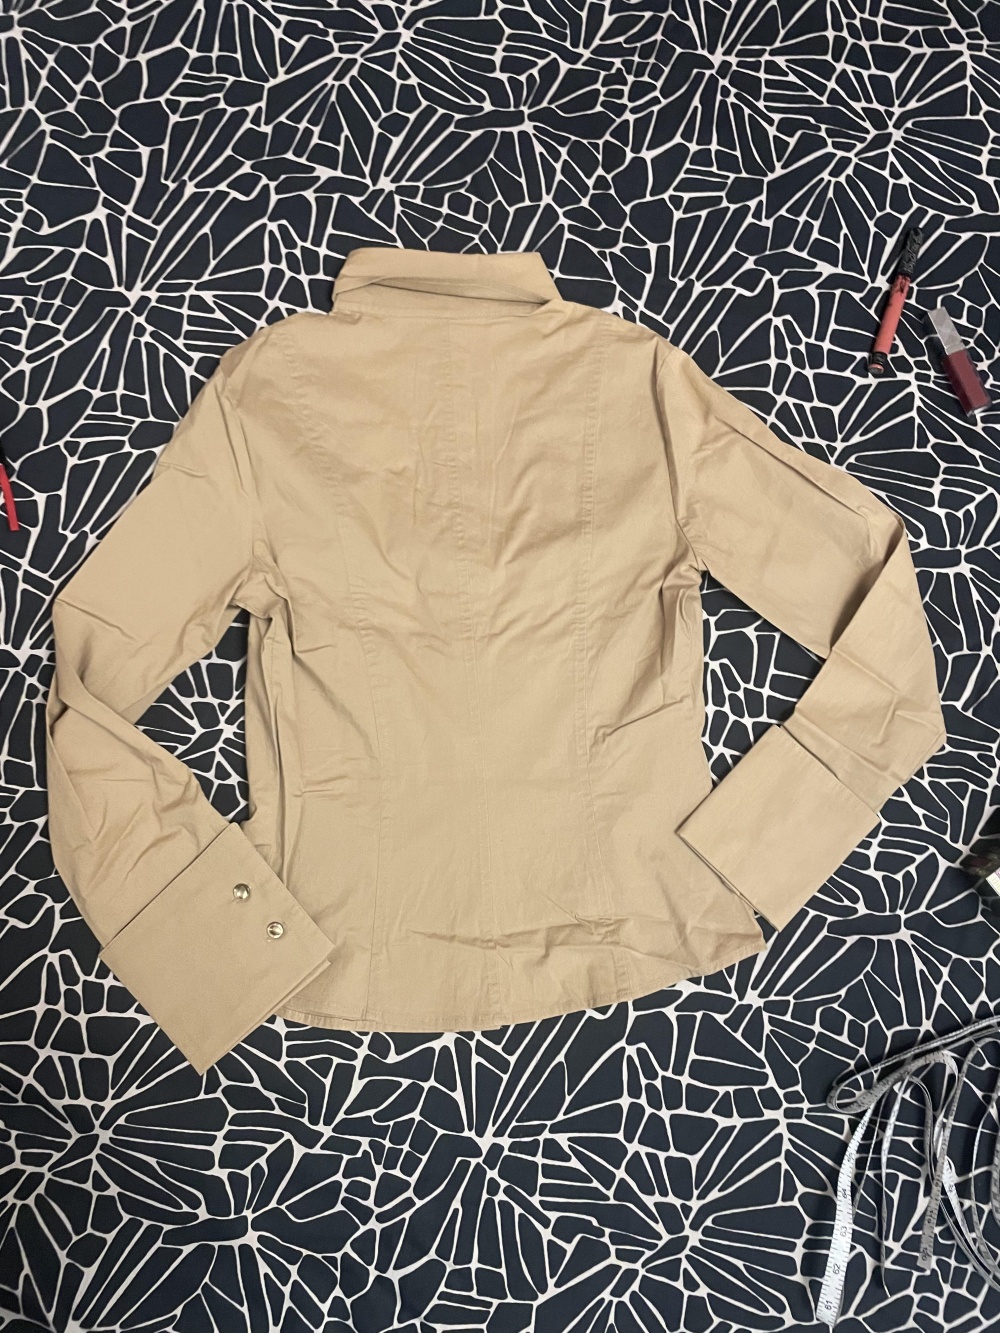 Рубашка Penny Black, 44 размер (42-44/44 рос)